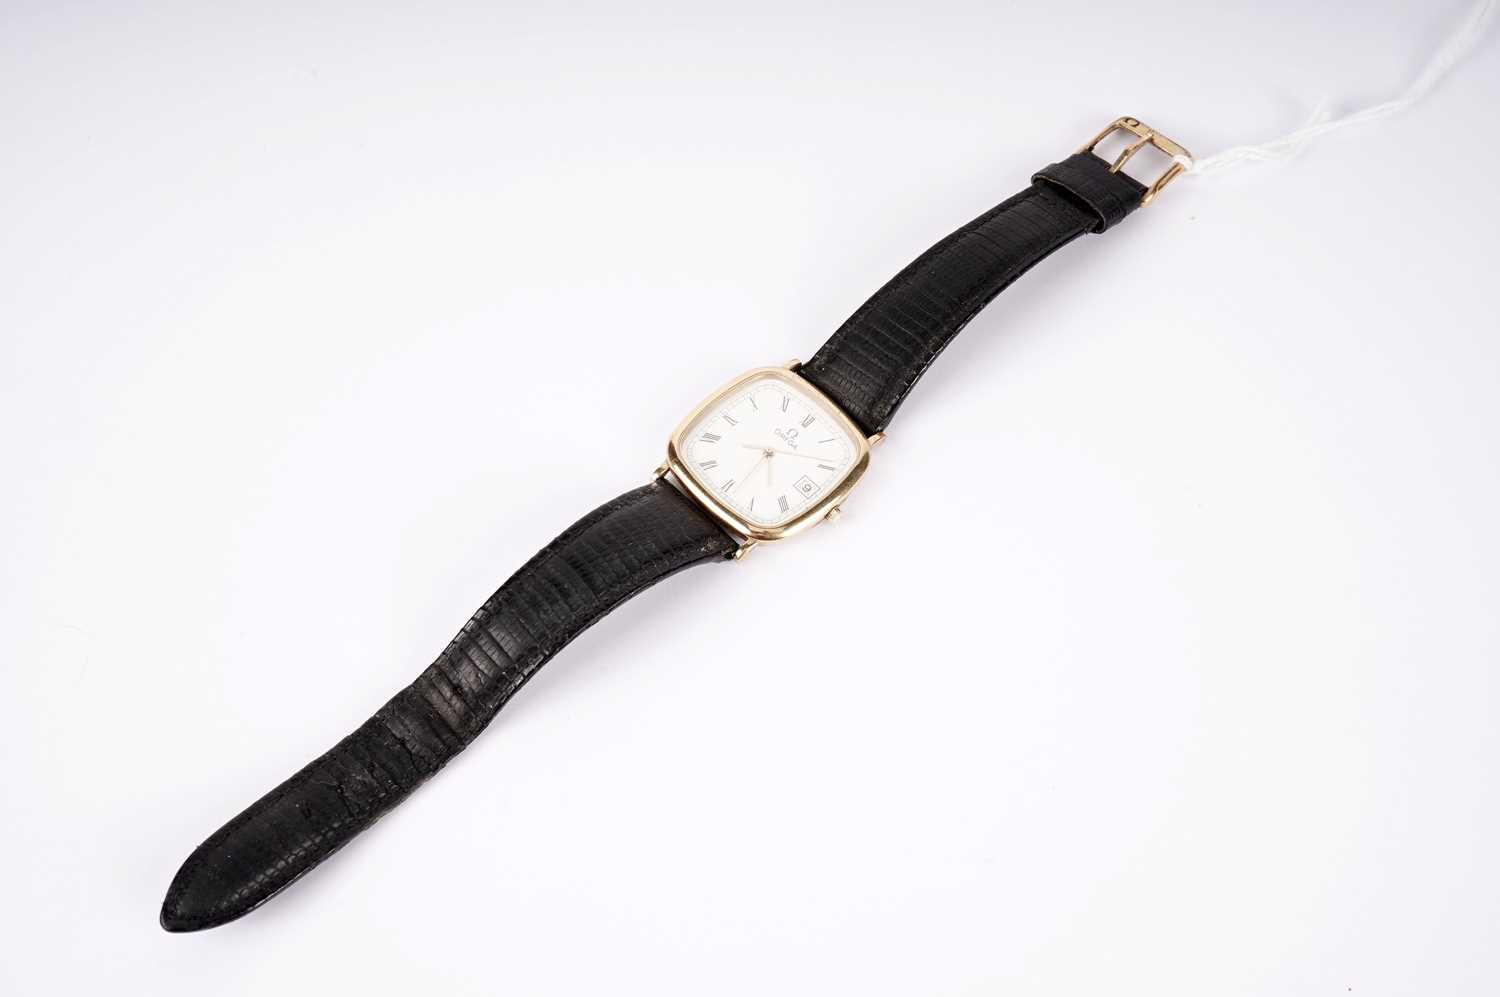 An Omega De Ville wristwatch